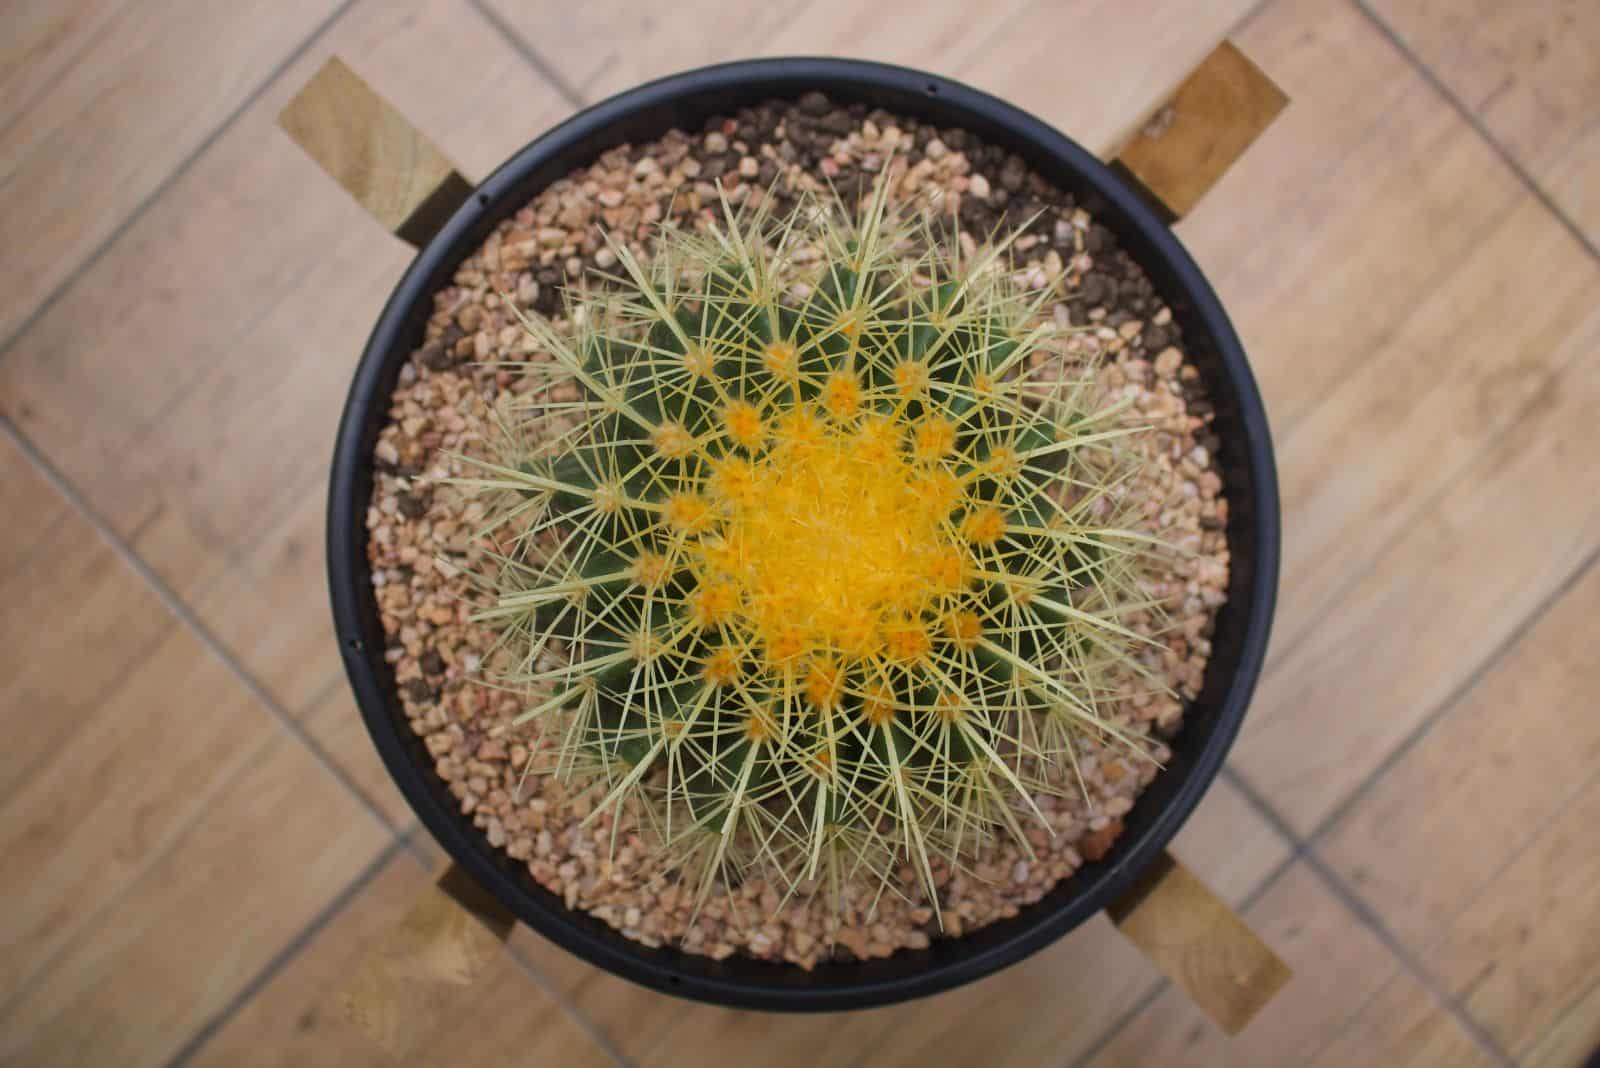 Golden Barrel Cactus in a black small pot